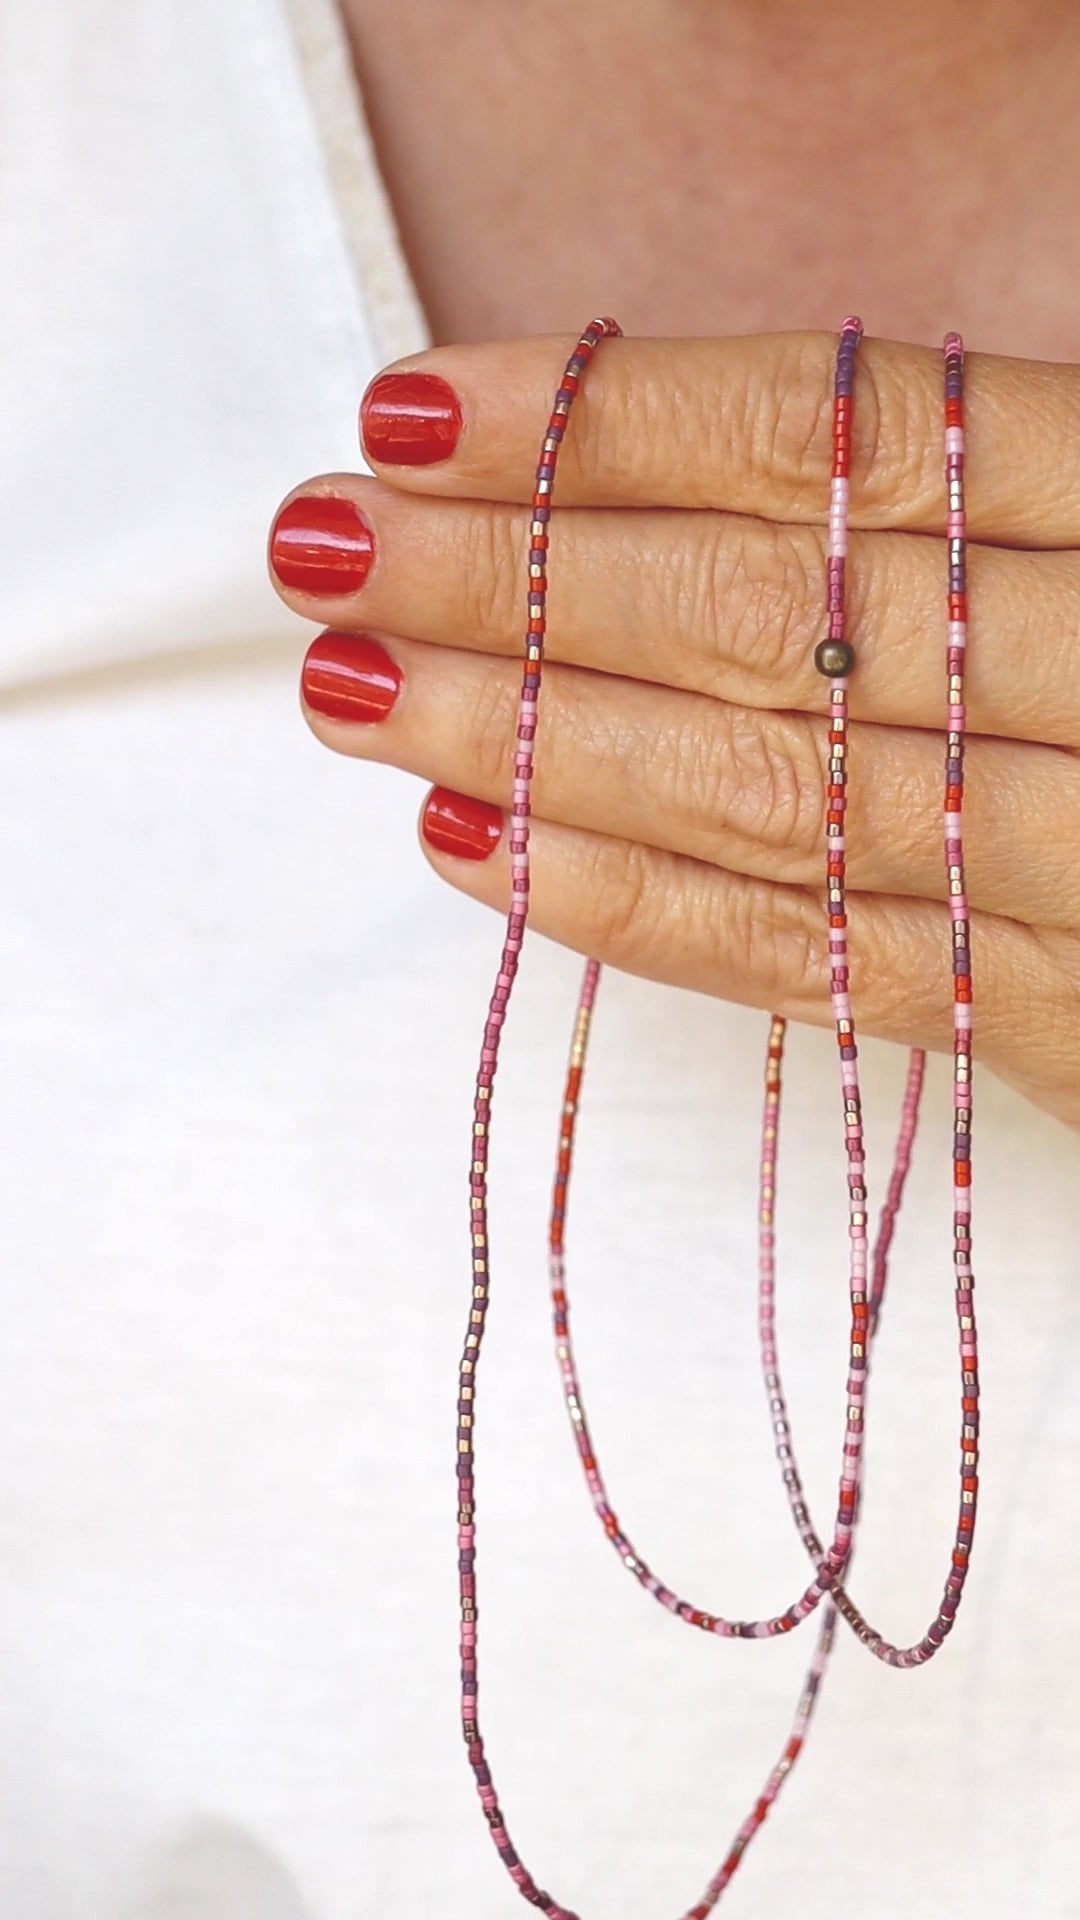 Vidéo du collier-bracelet élastique en perles de verre, tenu dans les mains, puis enroulé autour du poignet